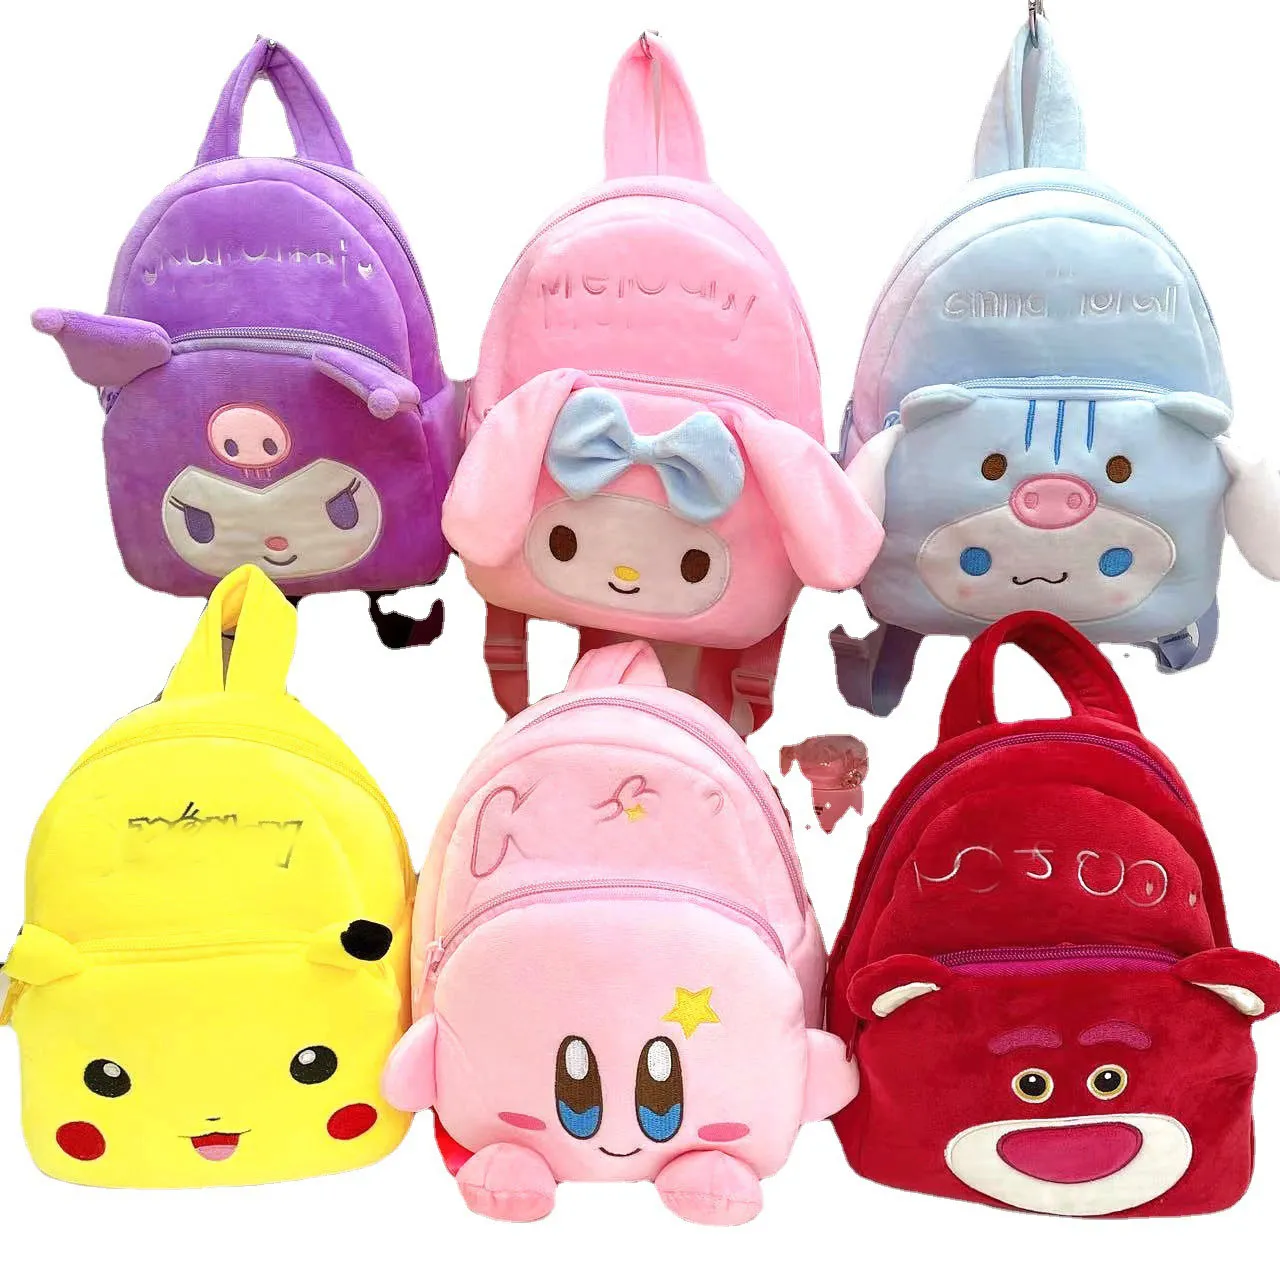 Детский рюкзак с японскими героями мультфильмов, плюшевый игрушечный рюкзак, милая кукла